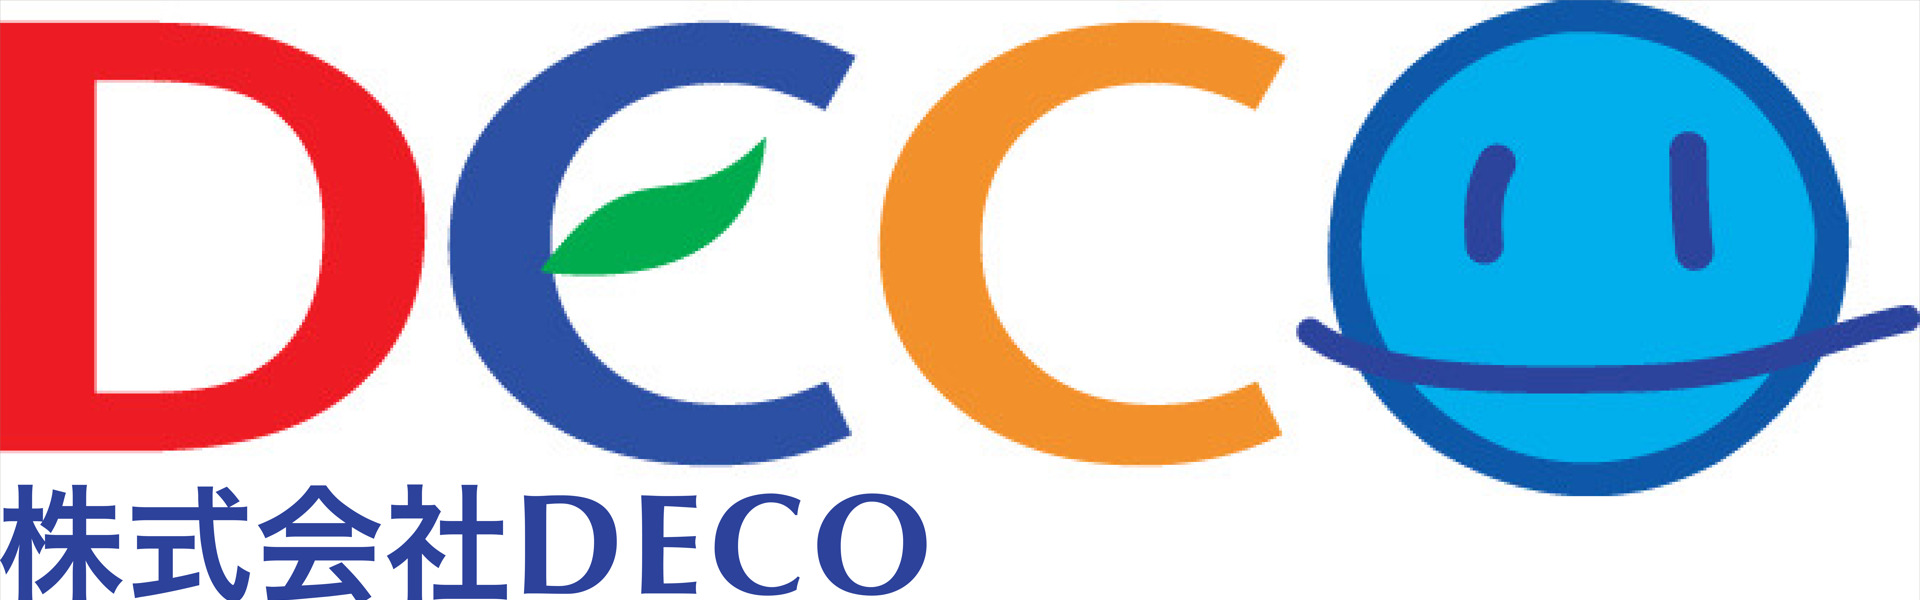 株式会社DECO